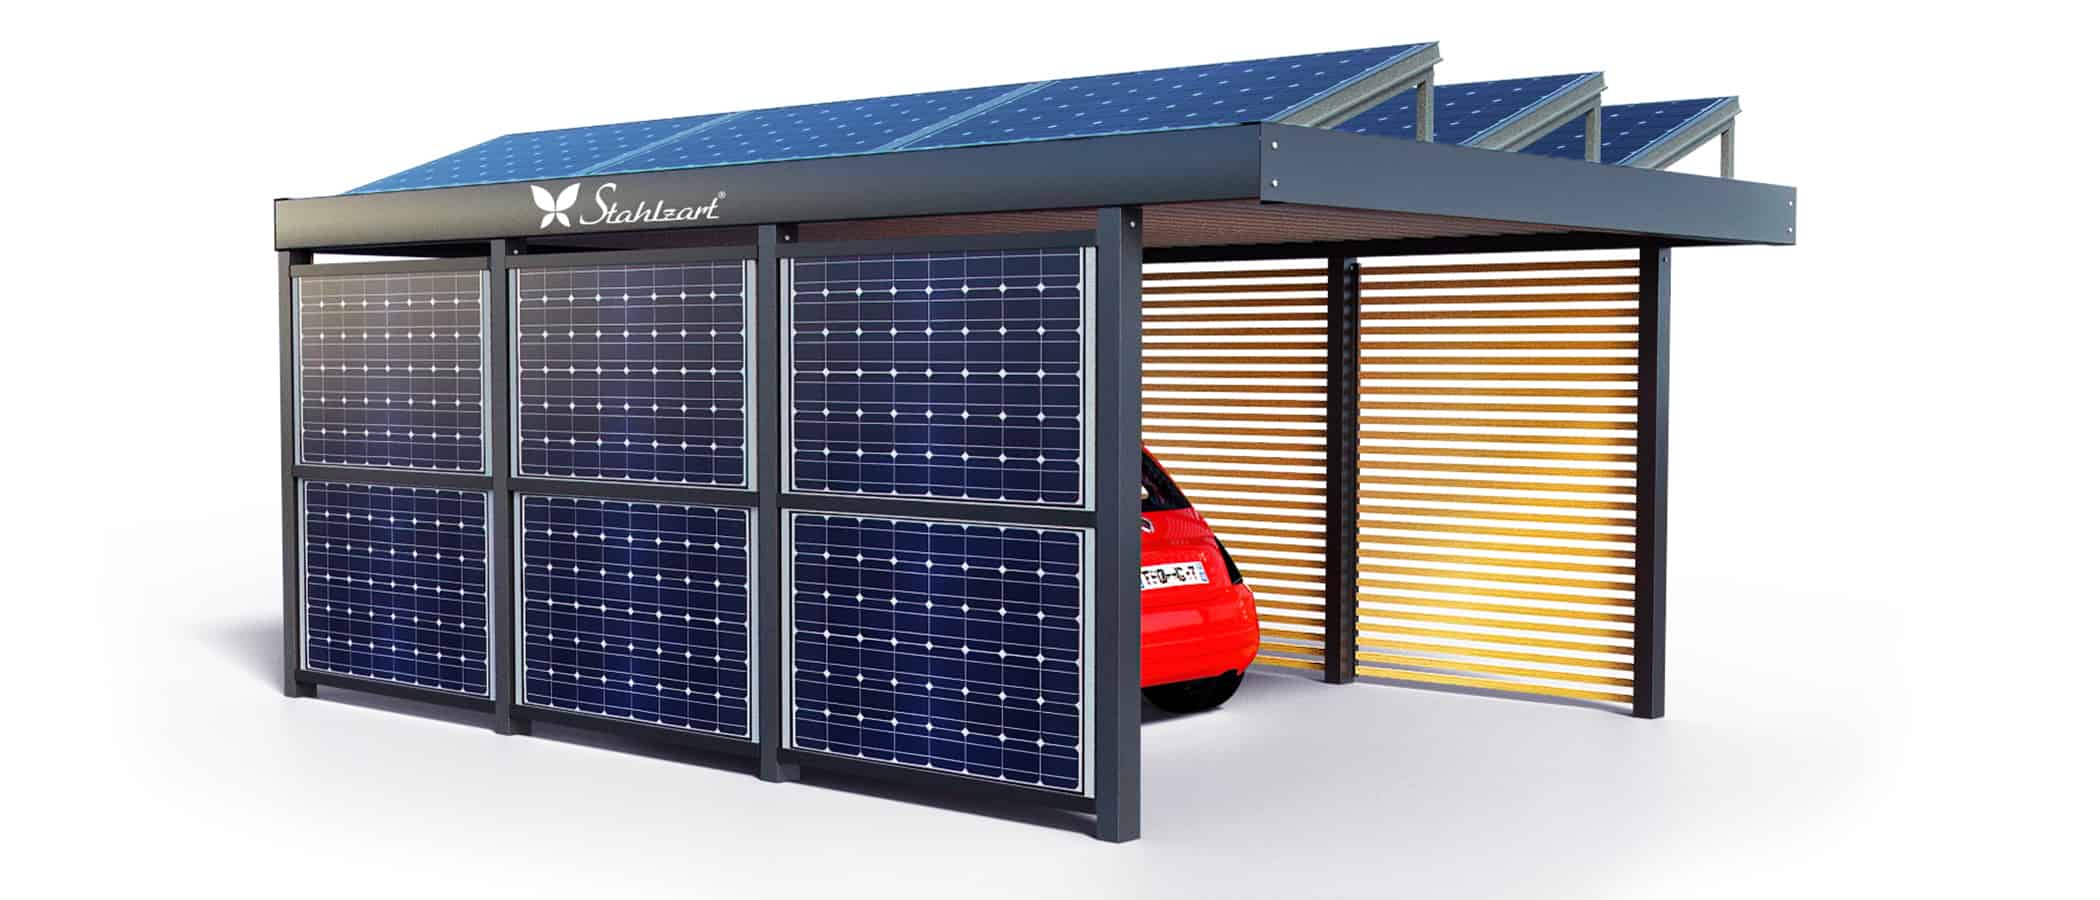 solar-carport-mit-flachdach-carports-pv-anlage-solaranlage-photovoltaik-garagen-garagendach-solarcarport-installation-seitenwand-mit-solarmodulen-solarcarports-flaechen-dach-e-auto-stahlzart